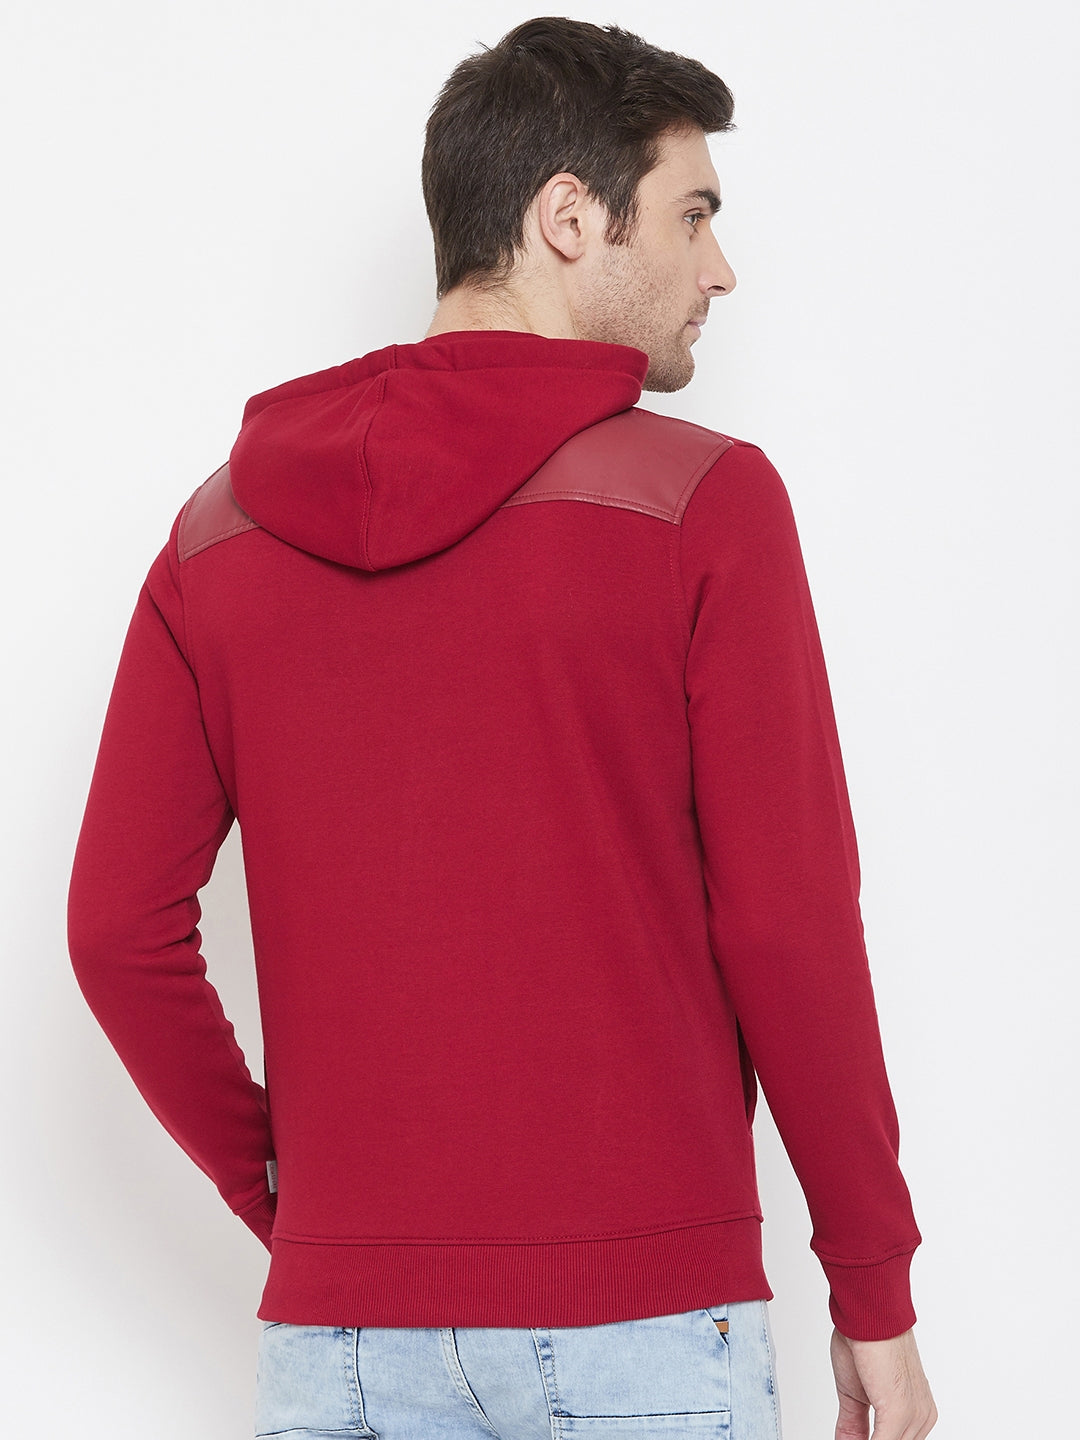 Red Printed Hooded Sweatshirt - Men Sweatshirts